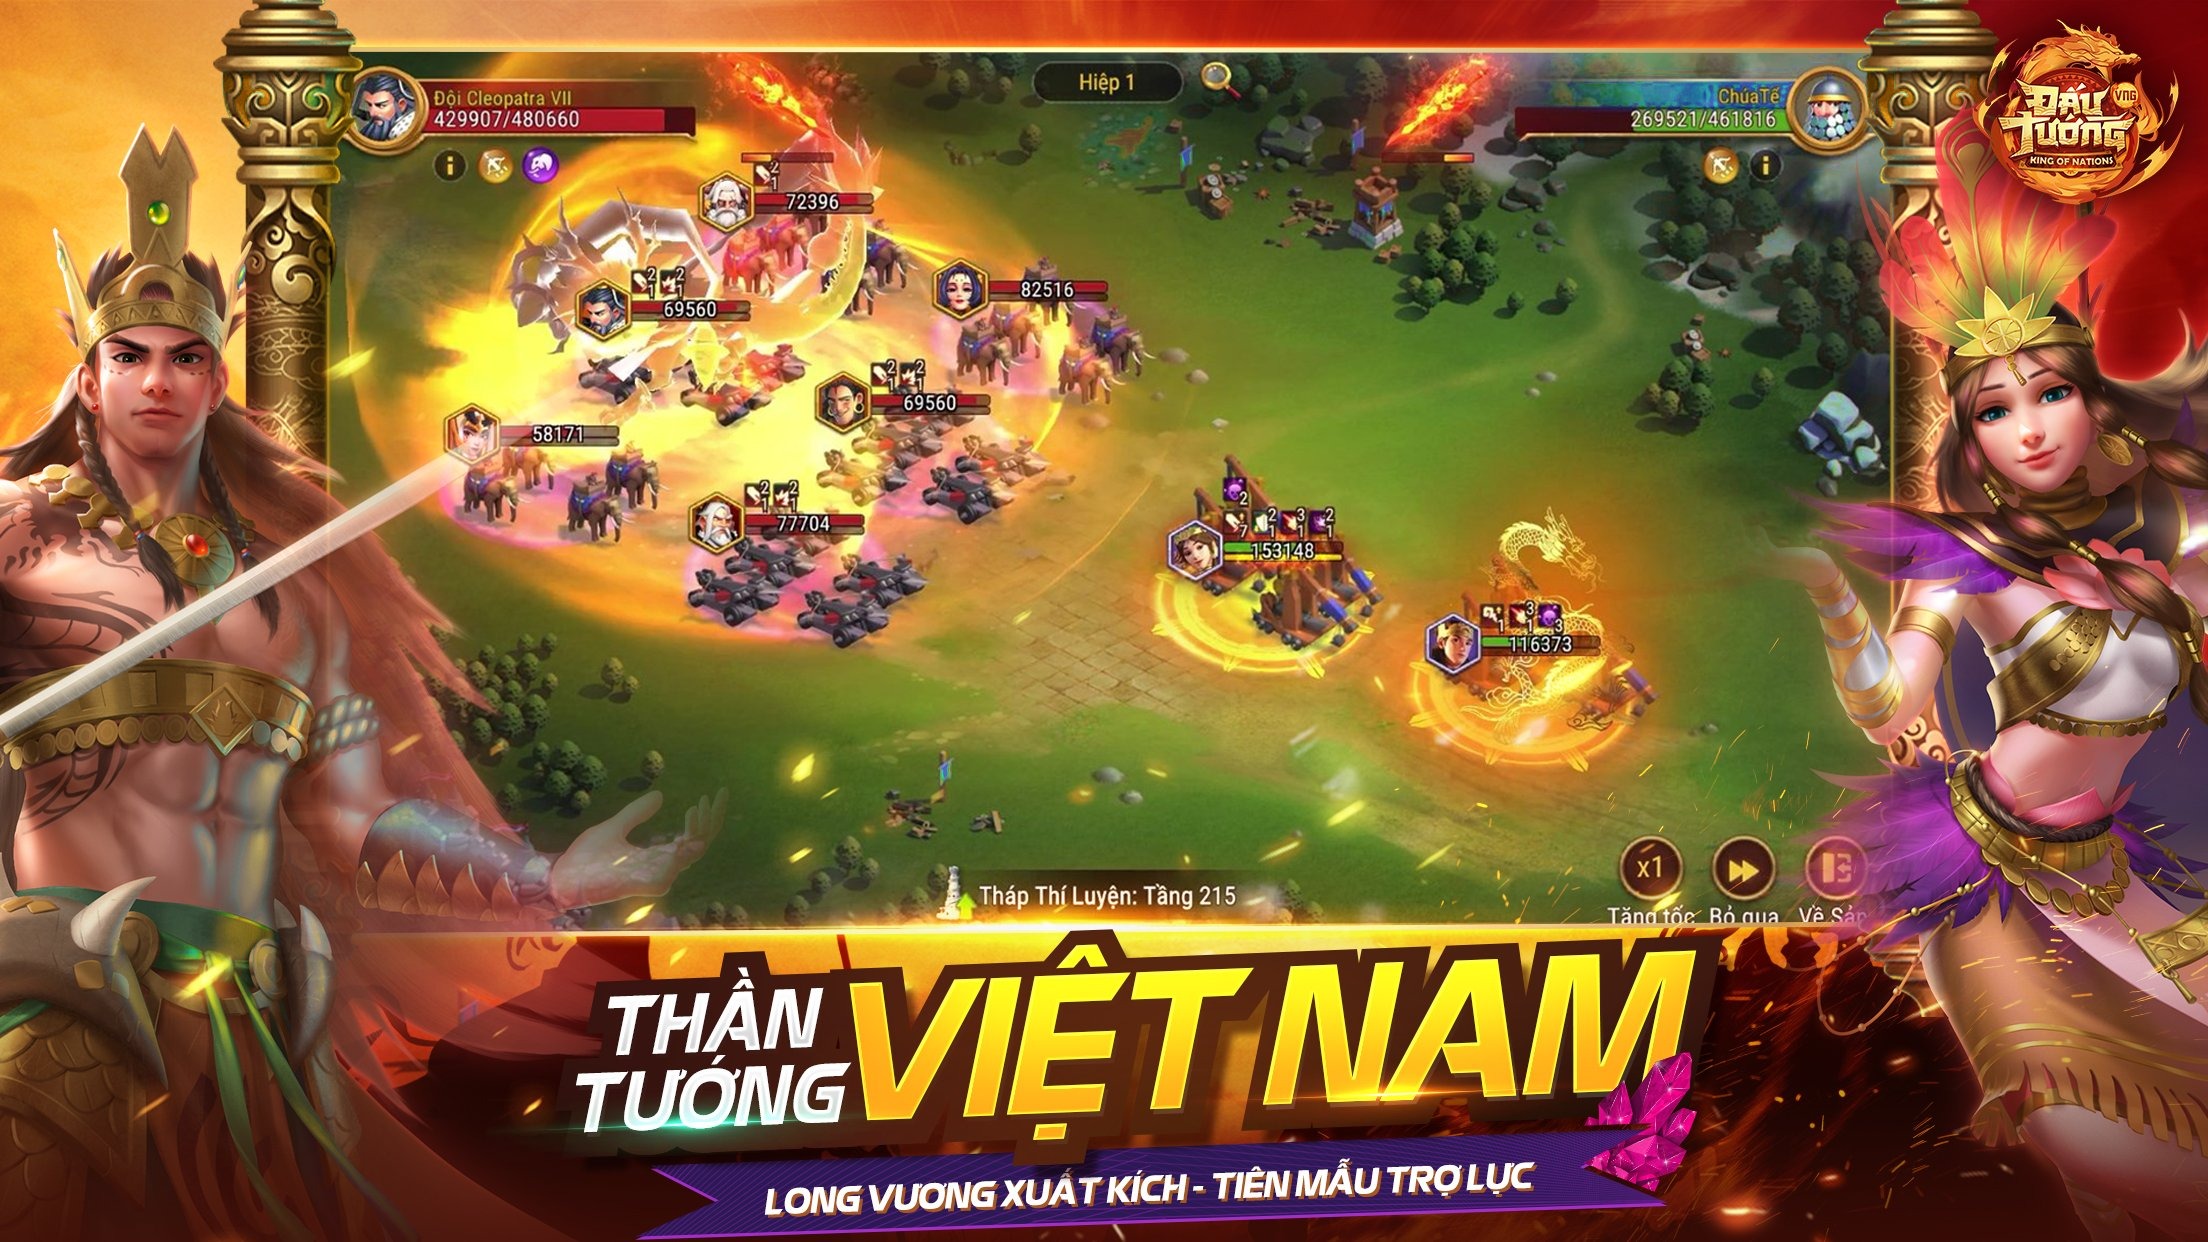 Im hơi lặng tiếng là thế, Đấu Tướng VNG vẫn tạo “cú hích” lớn trong làng game Việt